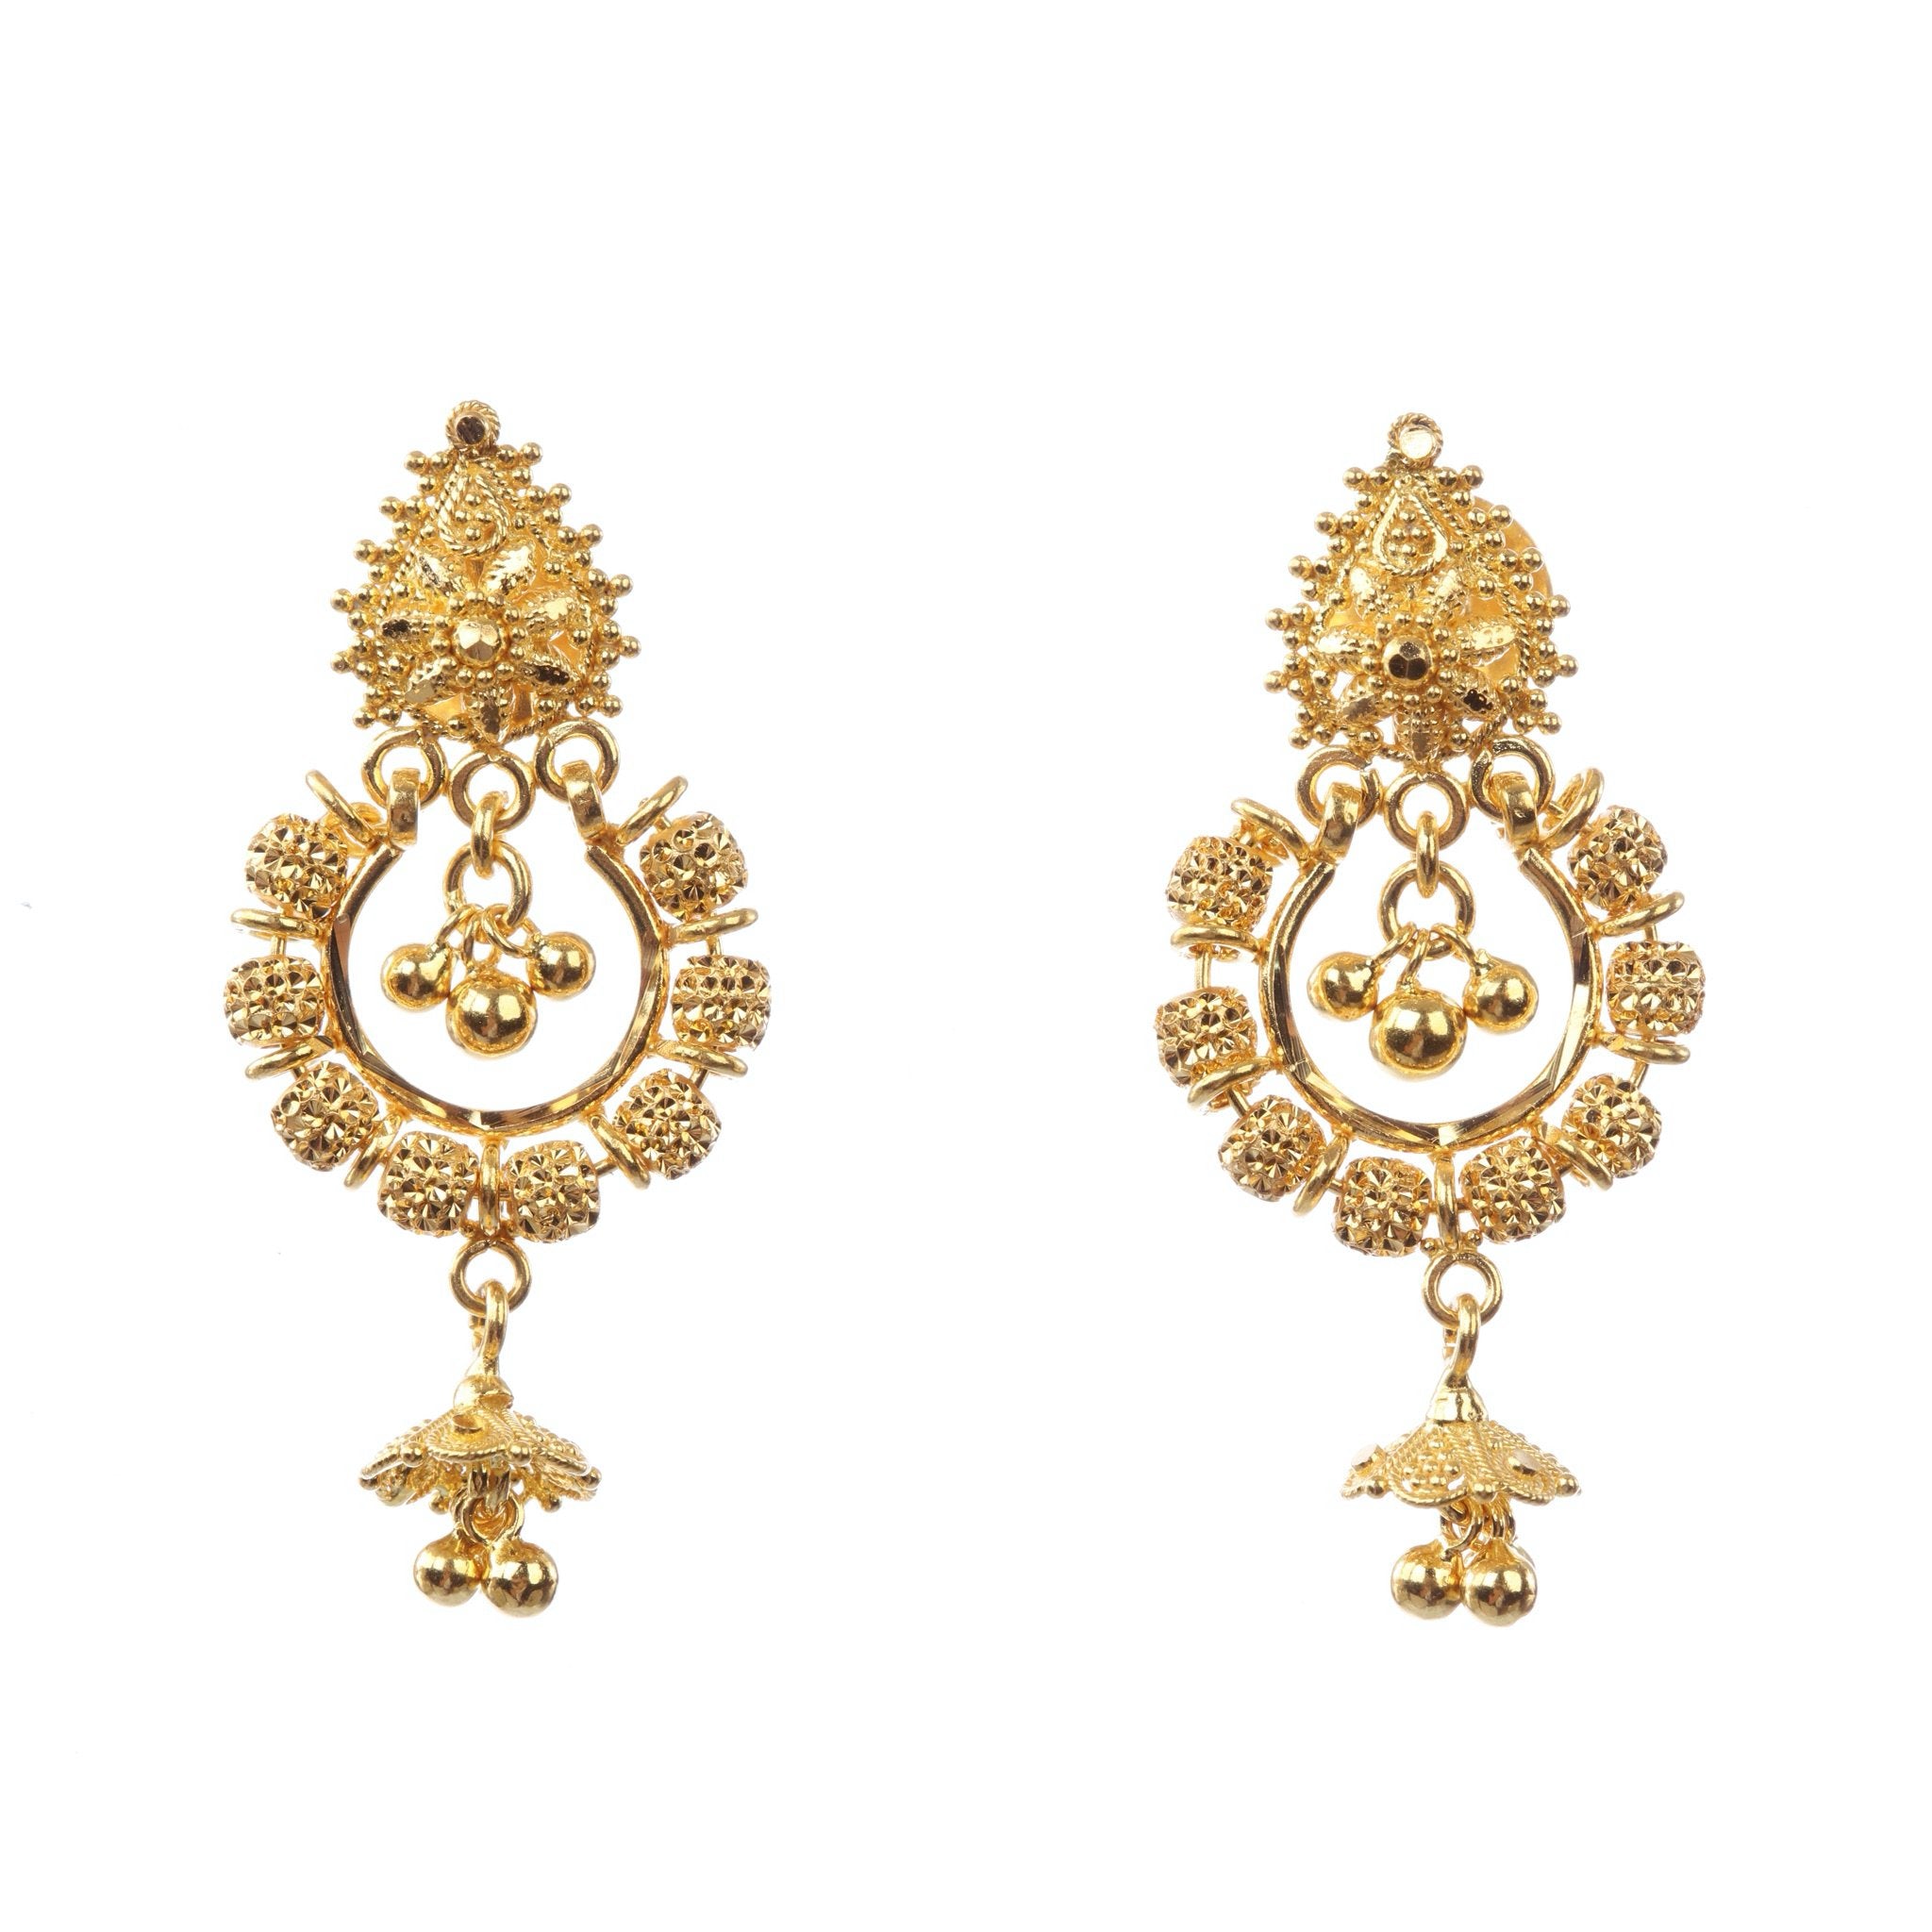 Gold Earrings Designs : डेली वियर में स्टाइलिश लुक पाने के लिए पहनें यें